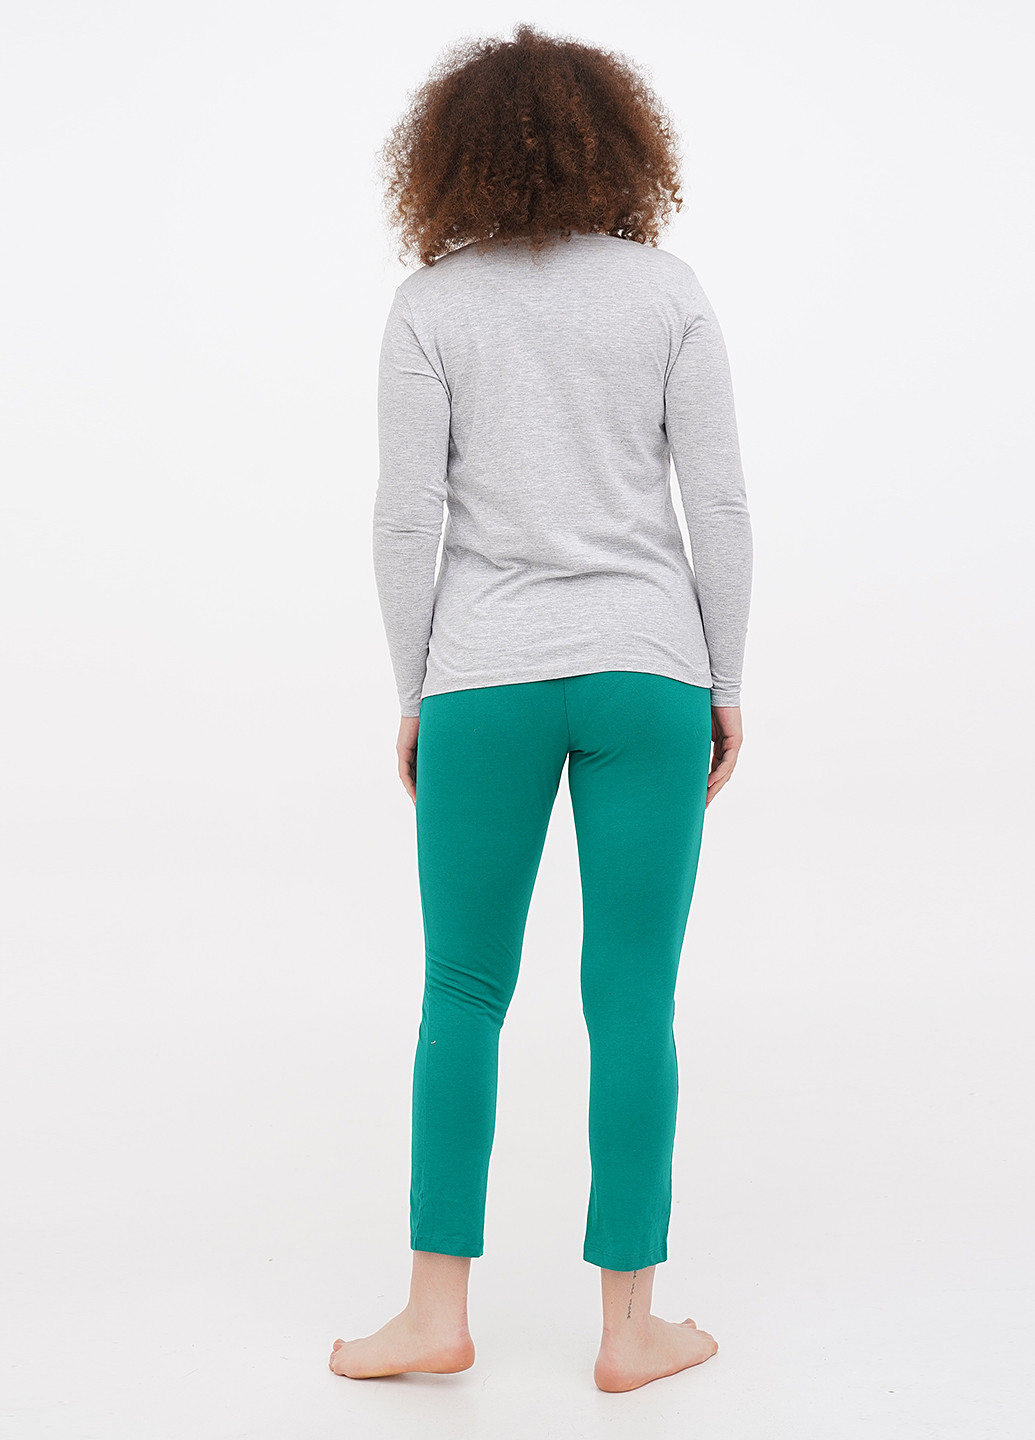 Комбинированная всесезон пижама (лонгслив, брюки) лонгслив + брюки Cleve